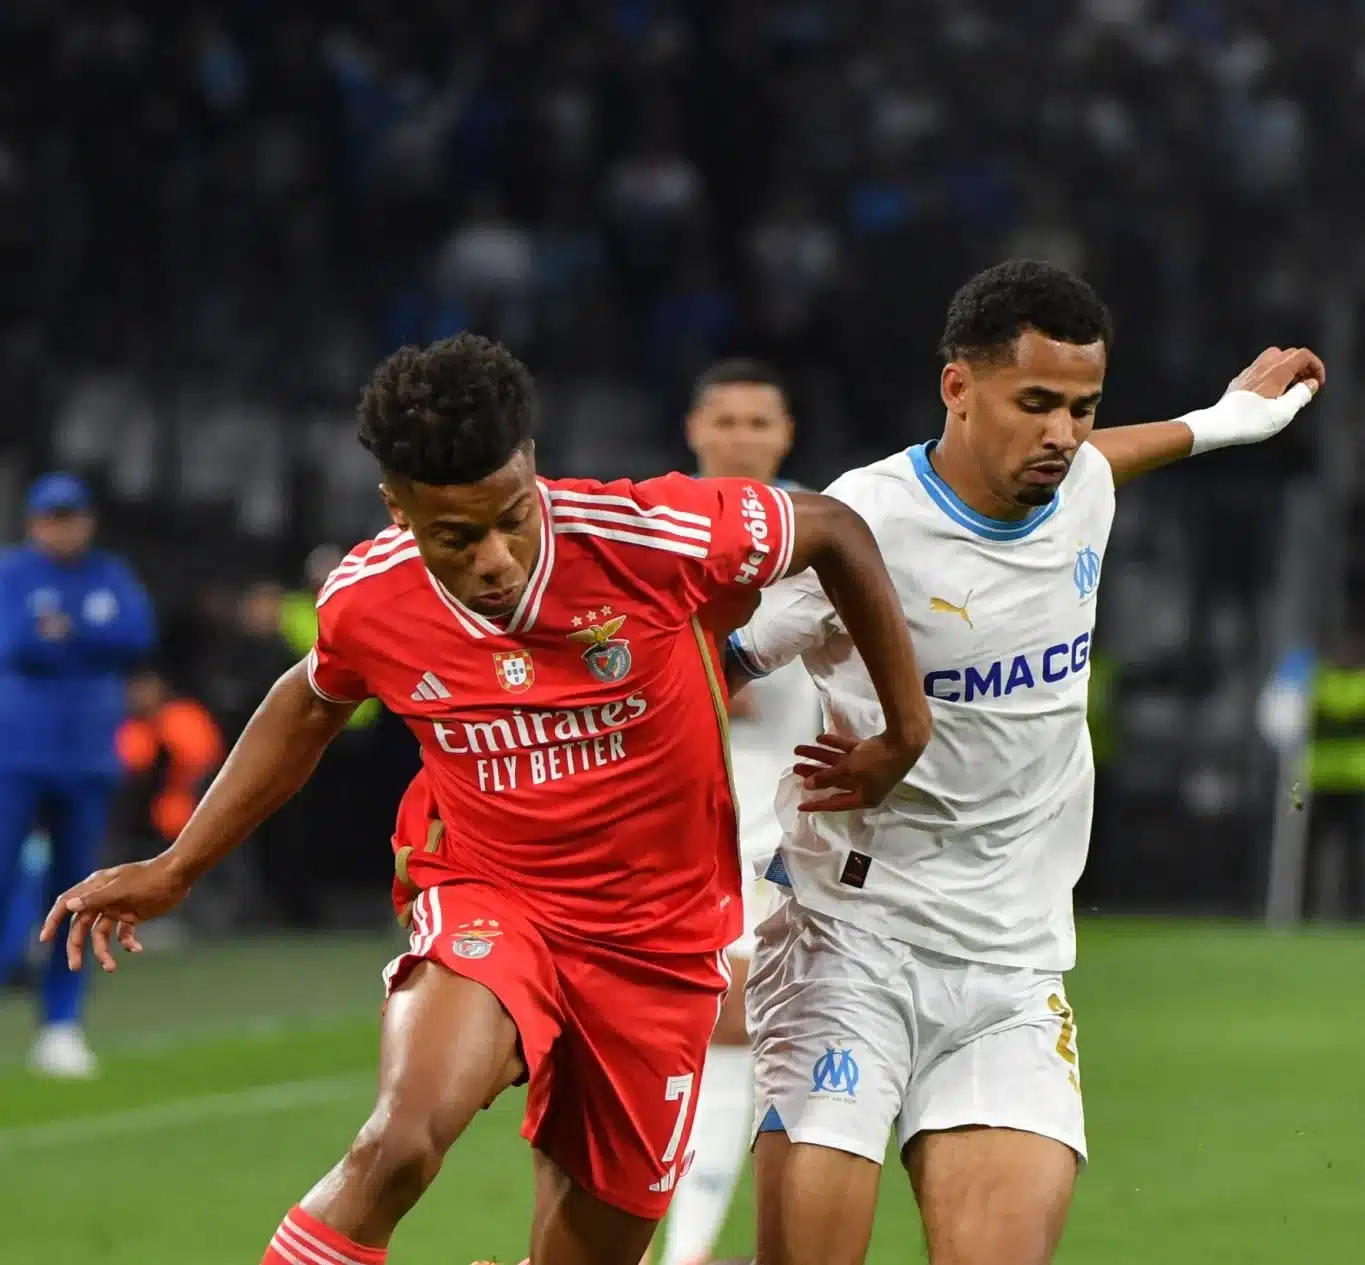 Europa League : Marseille élimine Benfica aux tirs au but et file en demi-finales !